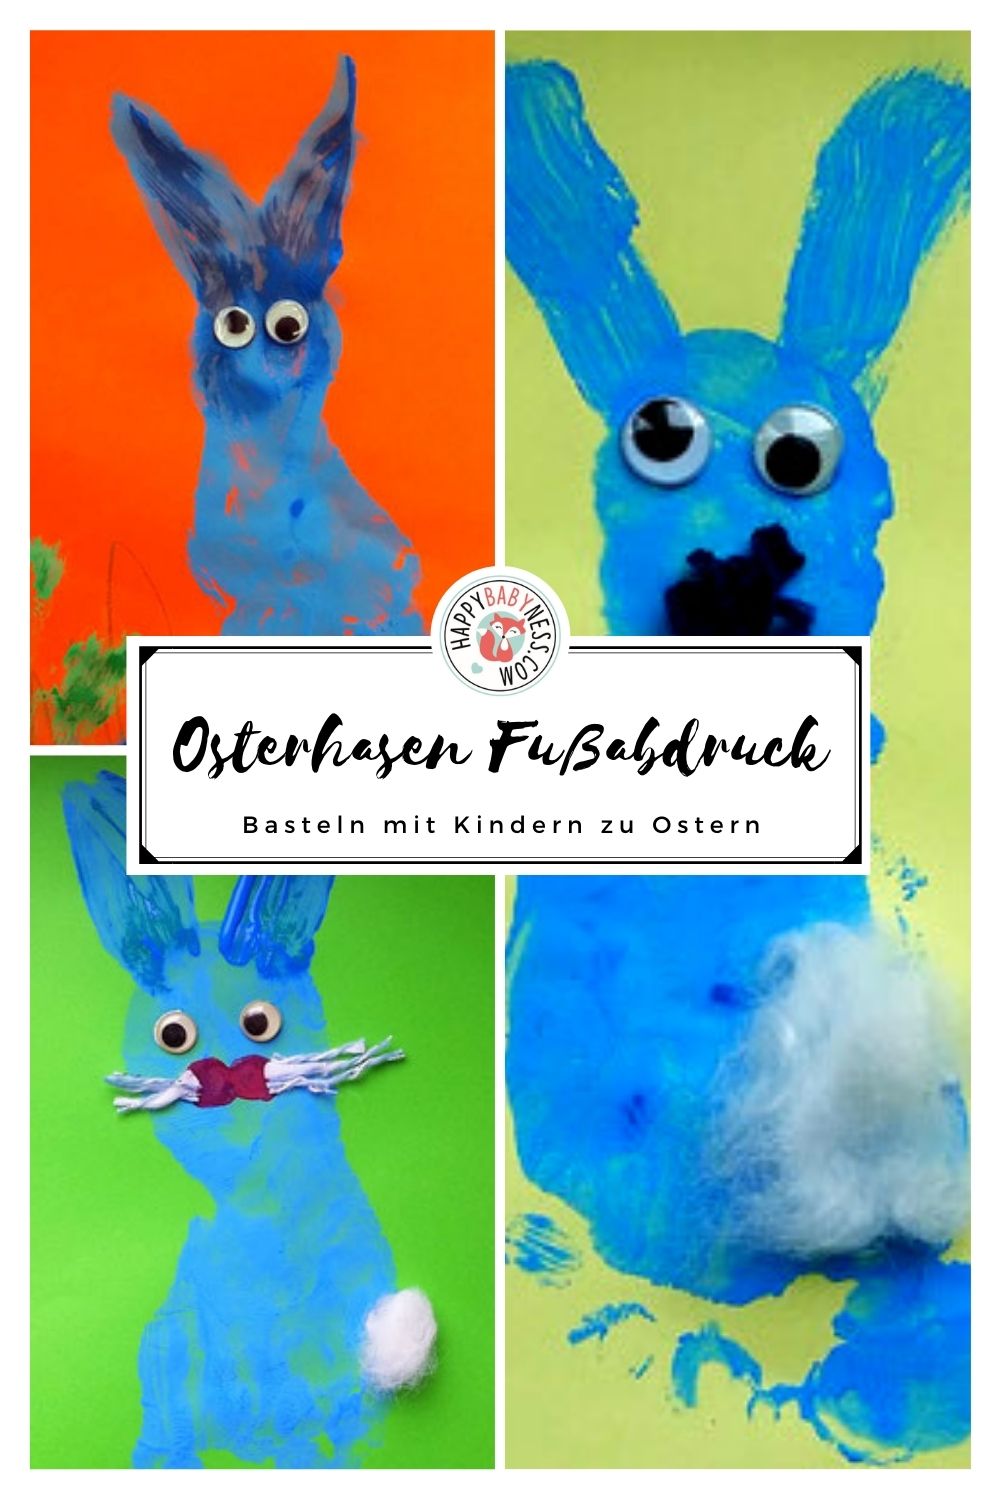 DIY_Anleitung_Basteln_Kinder_Ostern_Fingerfarben_Fussabdruck_Osterhase